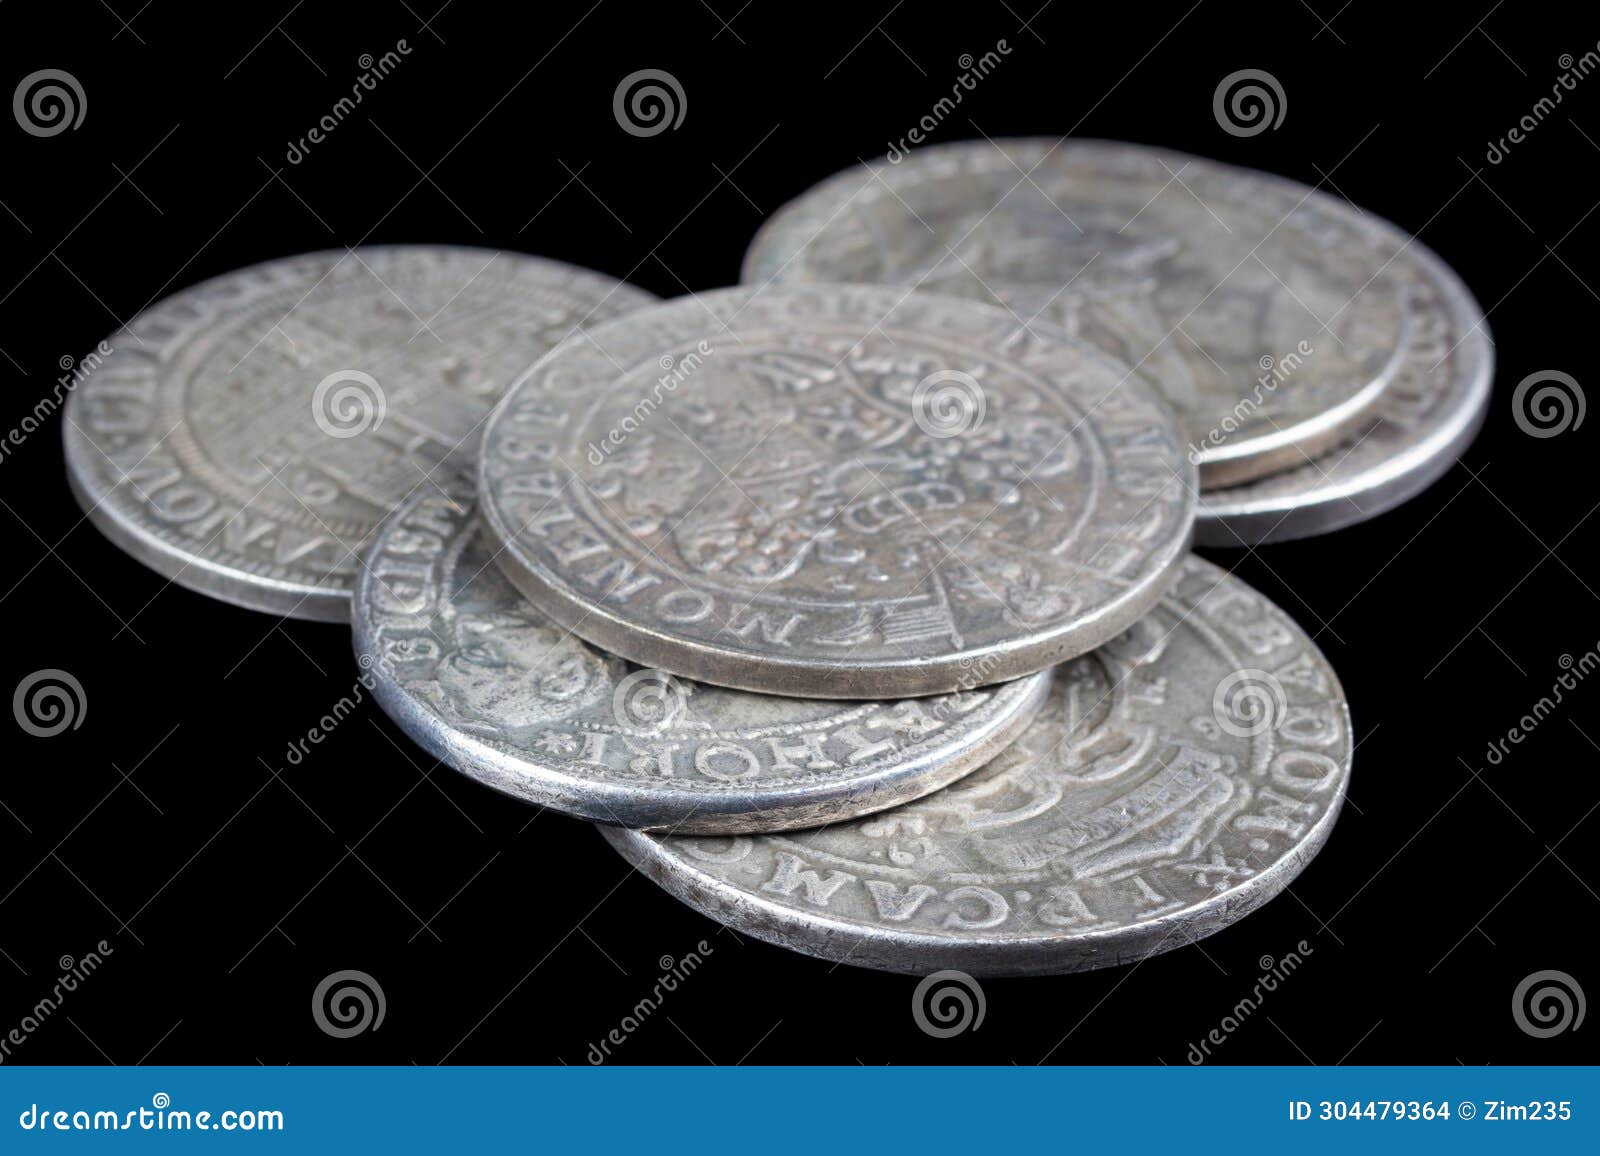 stack of old vintage silver medieval taller coins